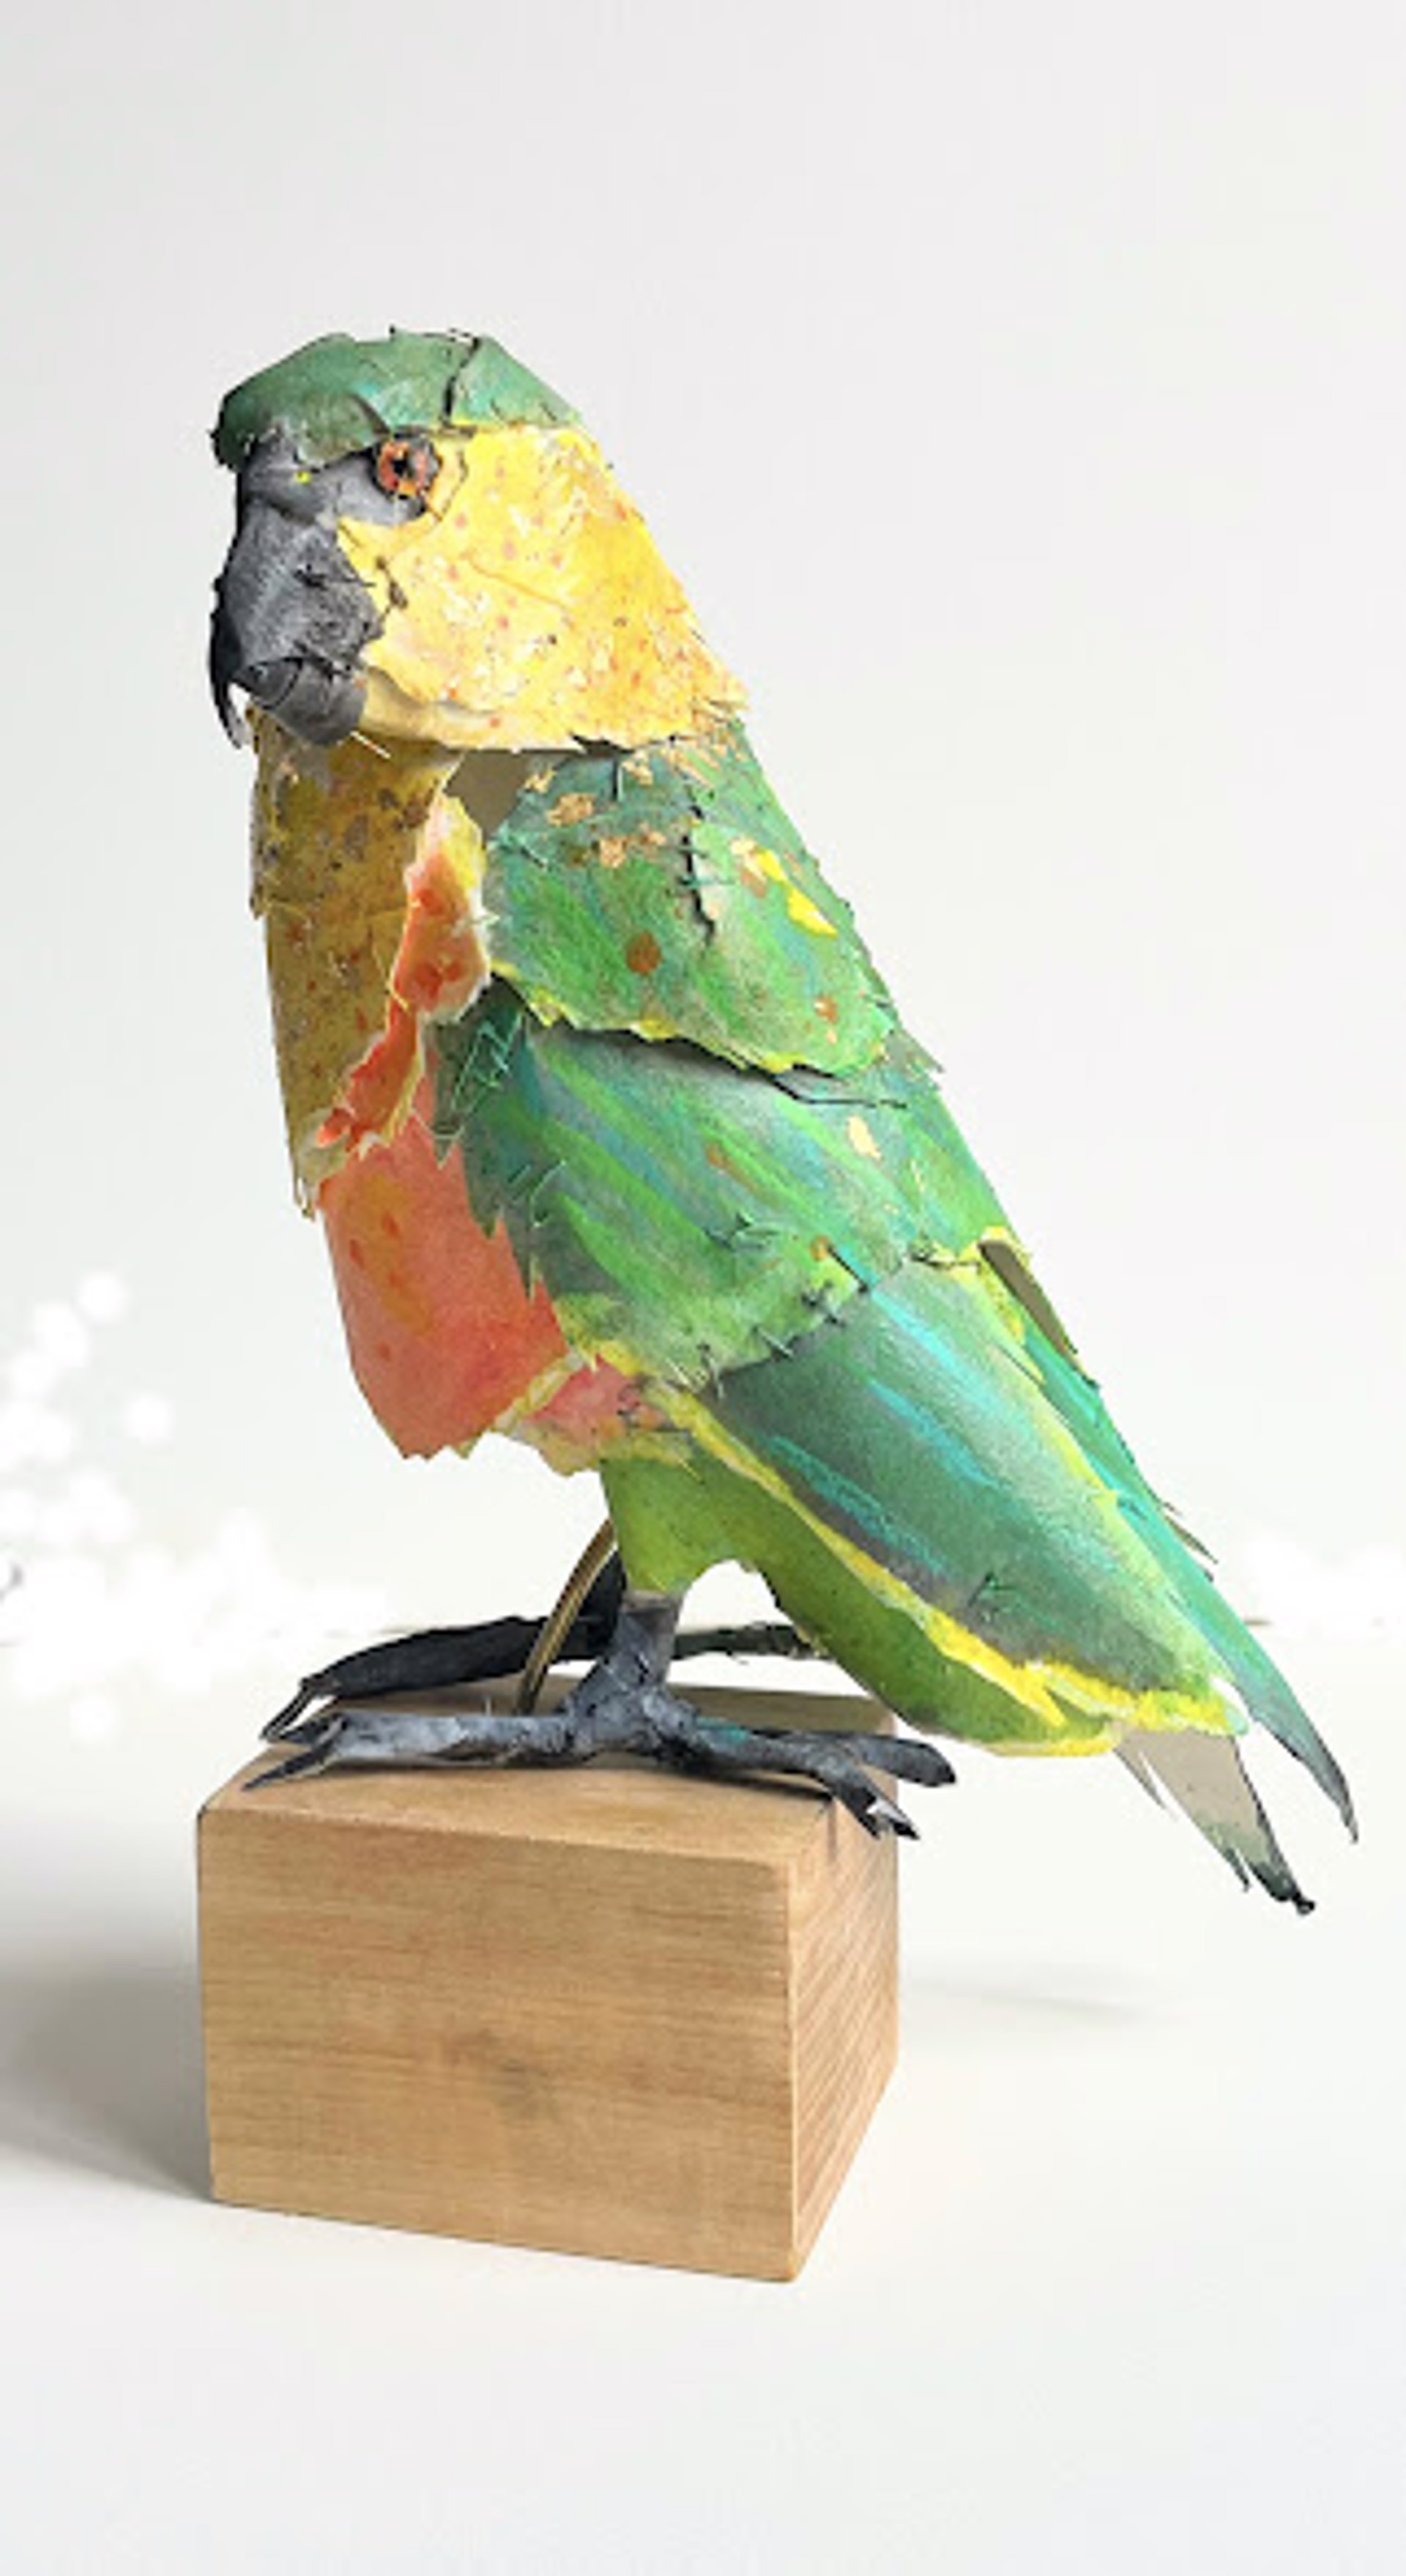 Pompous Parrot by Cathy Rowten